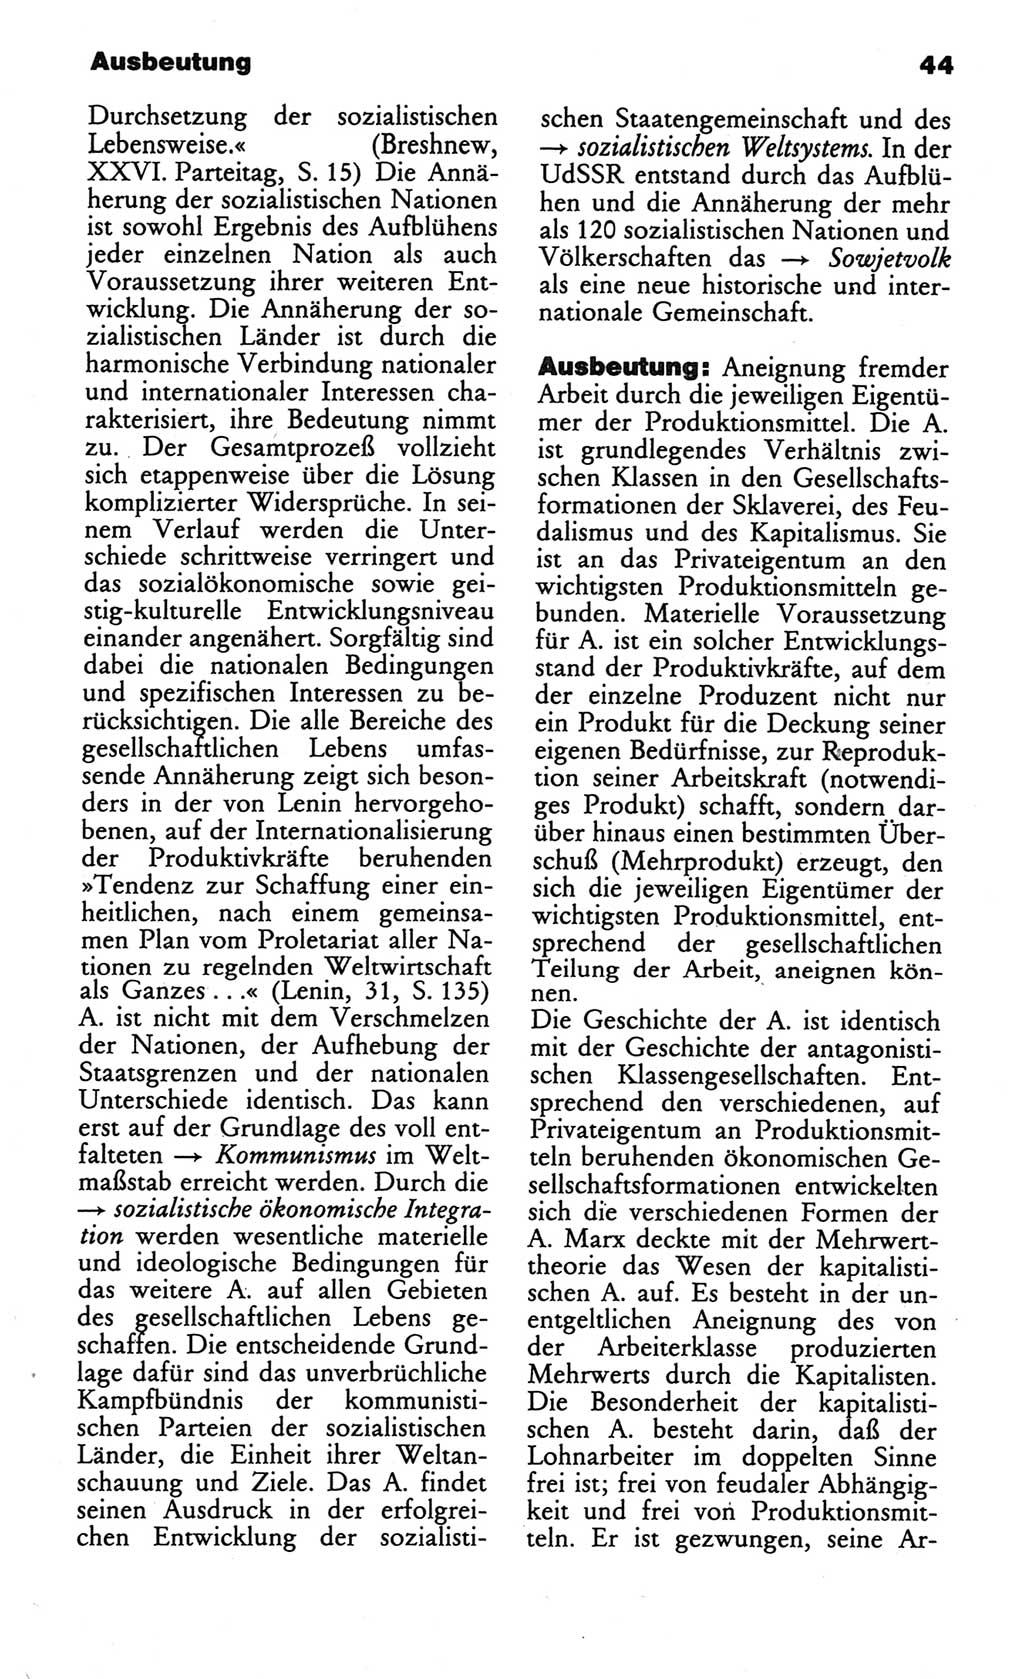 Wörterbuch des wissenschaftlichen Kommunismus [Deutsche Demokratische Republik (DDR)] 1984, Seite 44 (Wb. wiss. Komm. DDR 1984, S. 44)